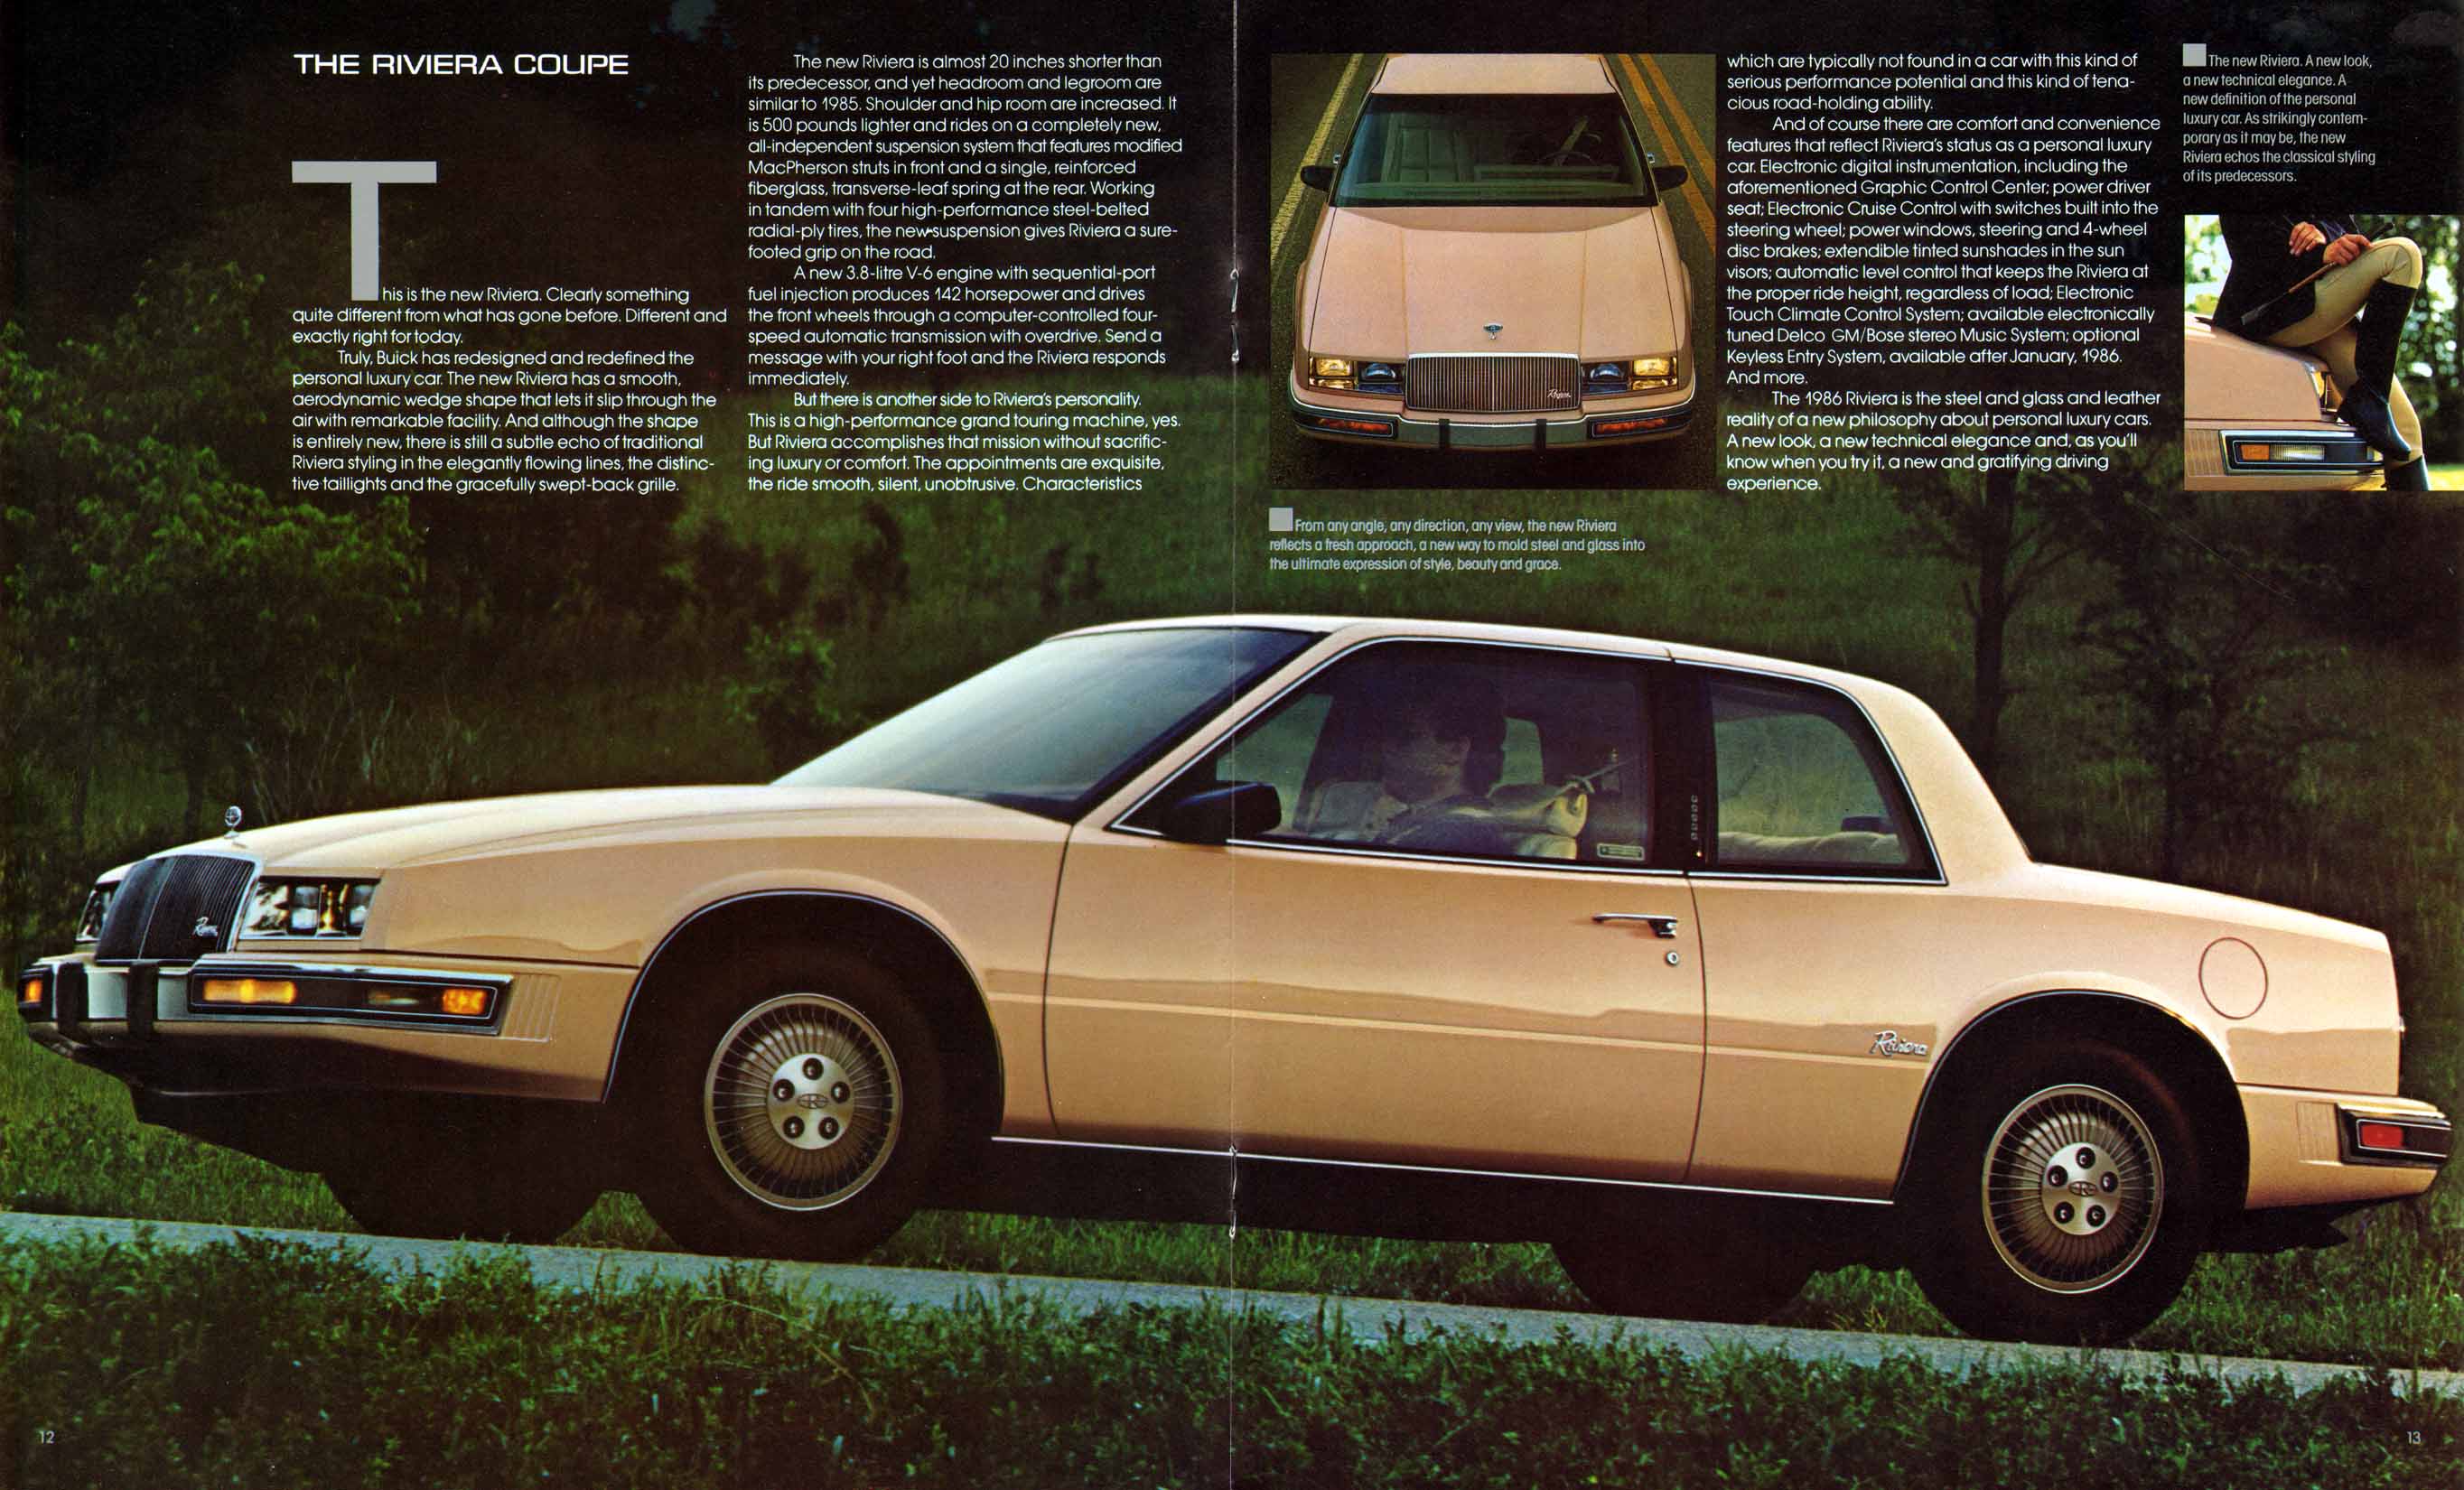 1986 Buick Riviera Prestige-12-13